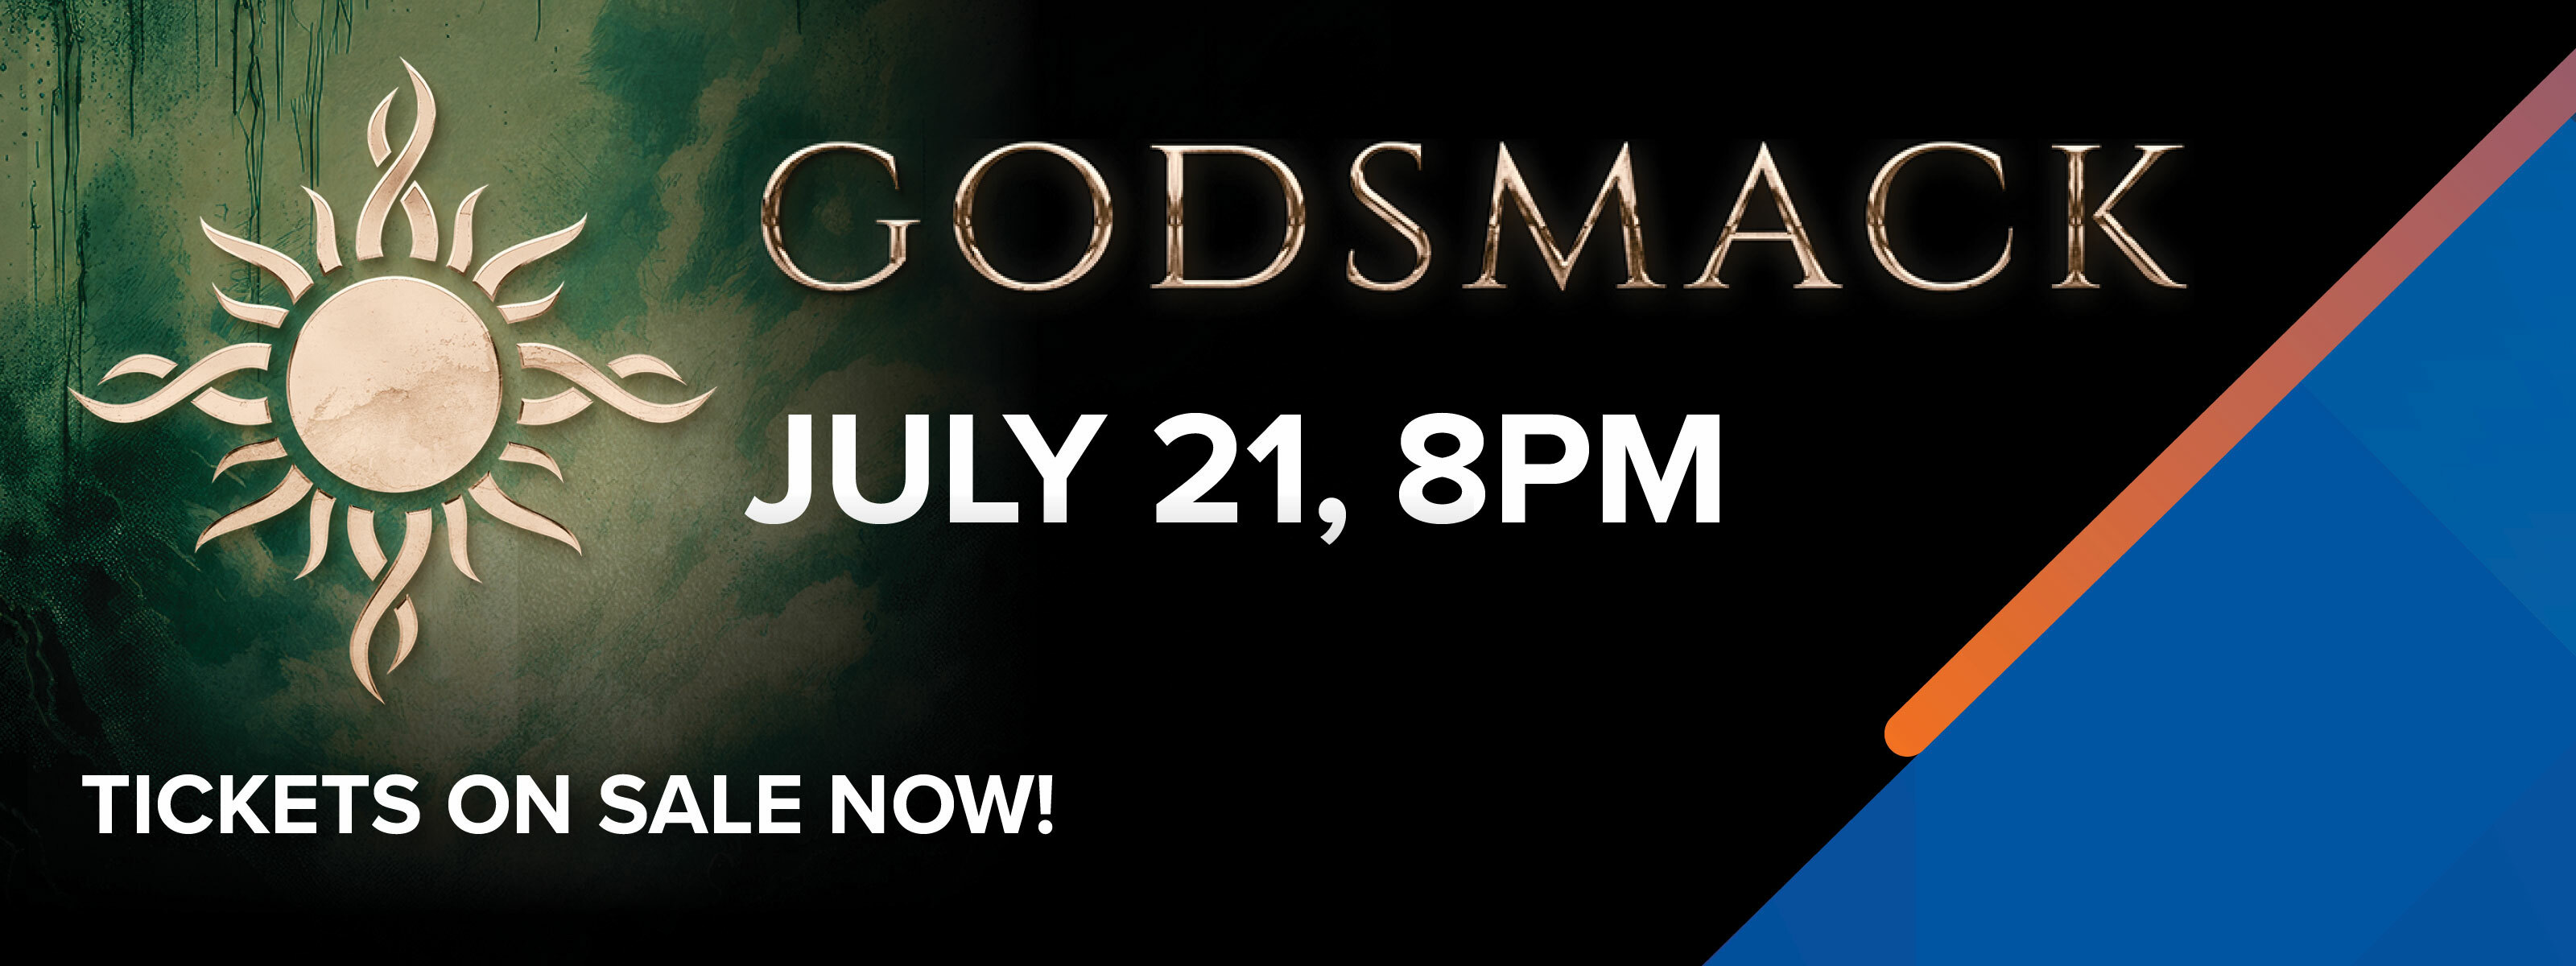 Godsmack July 21, 8pm Tickets On Sale Now